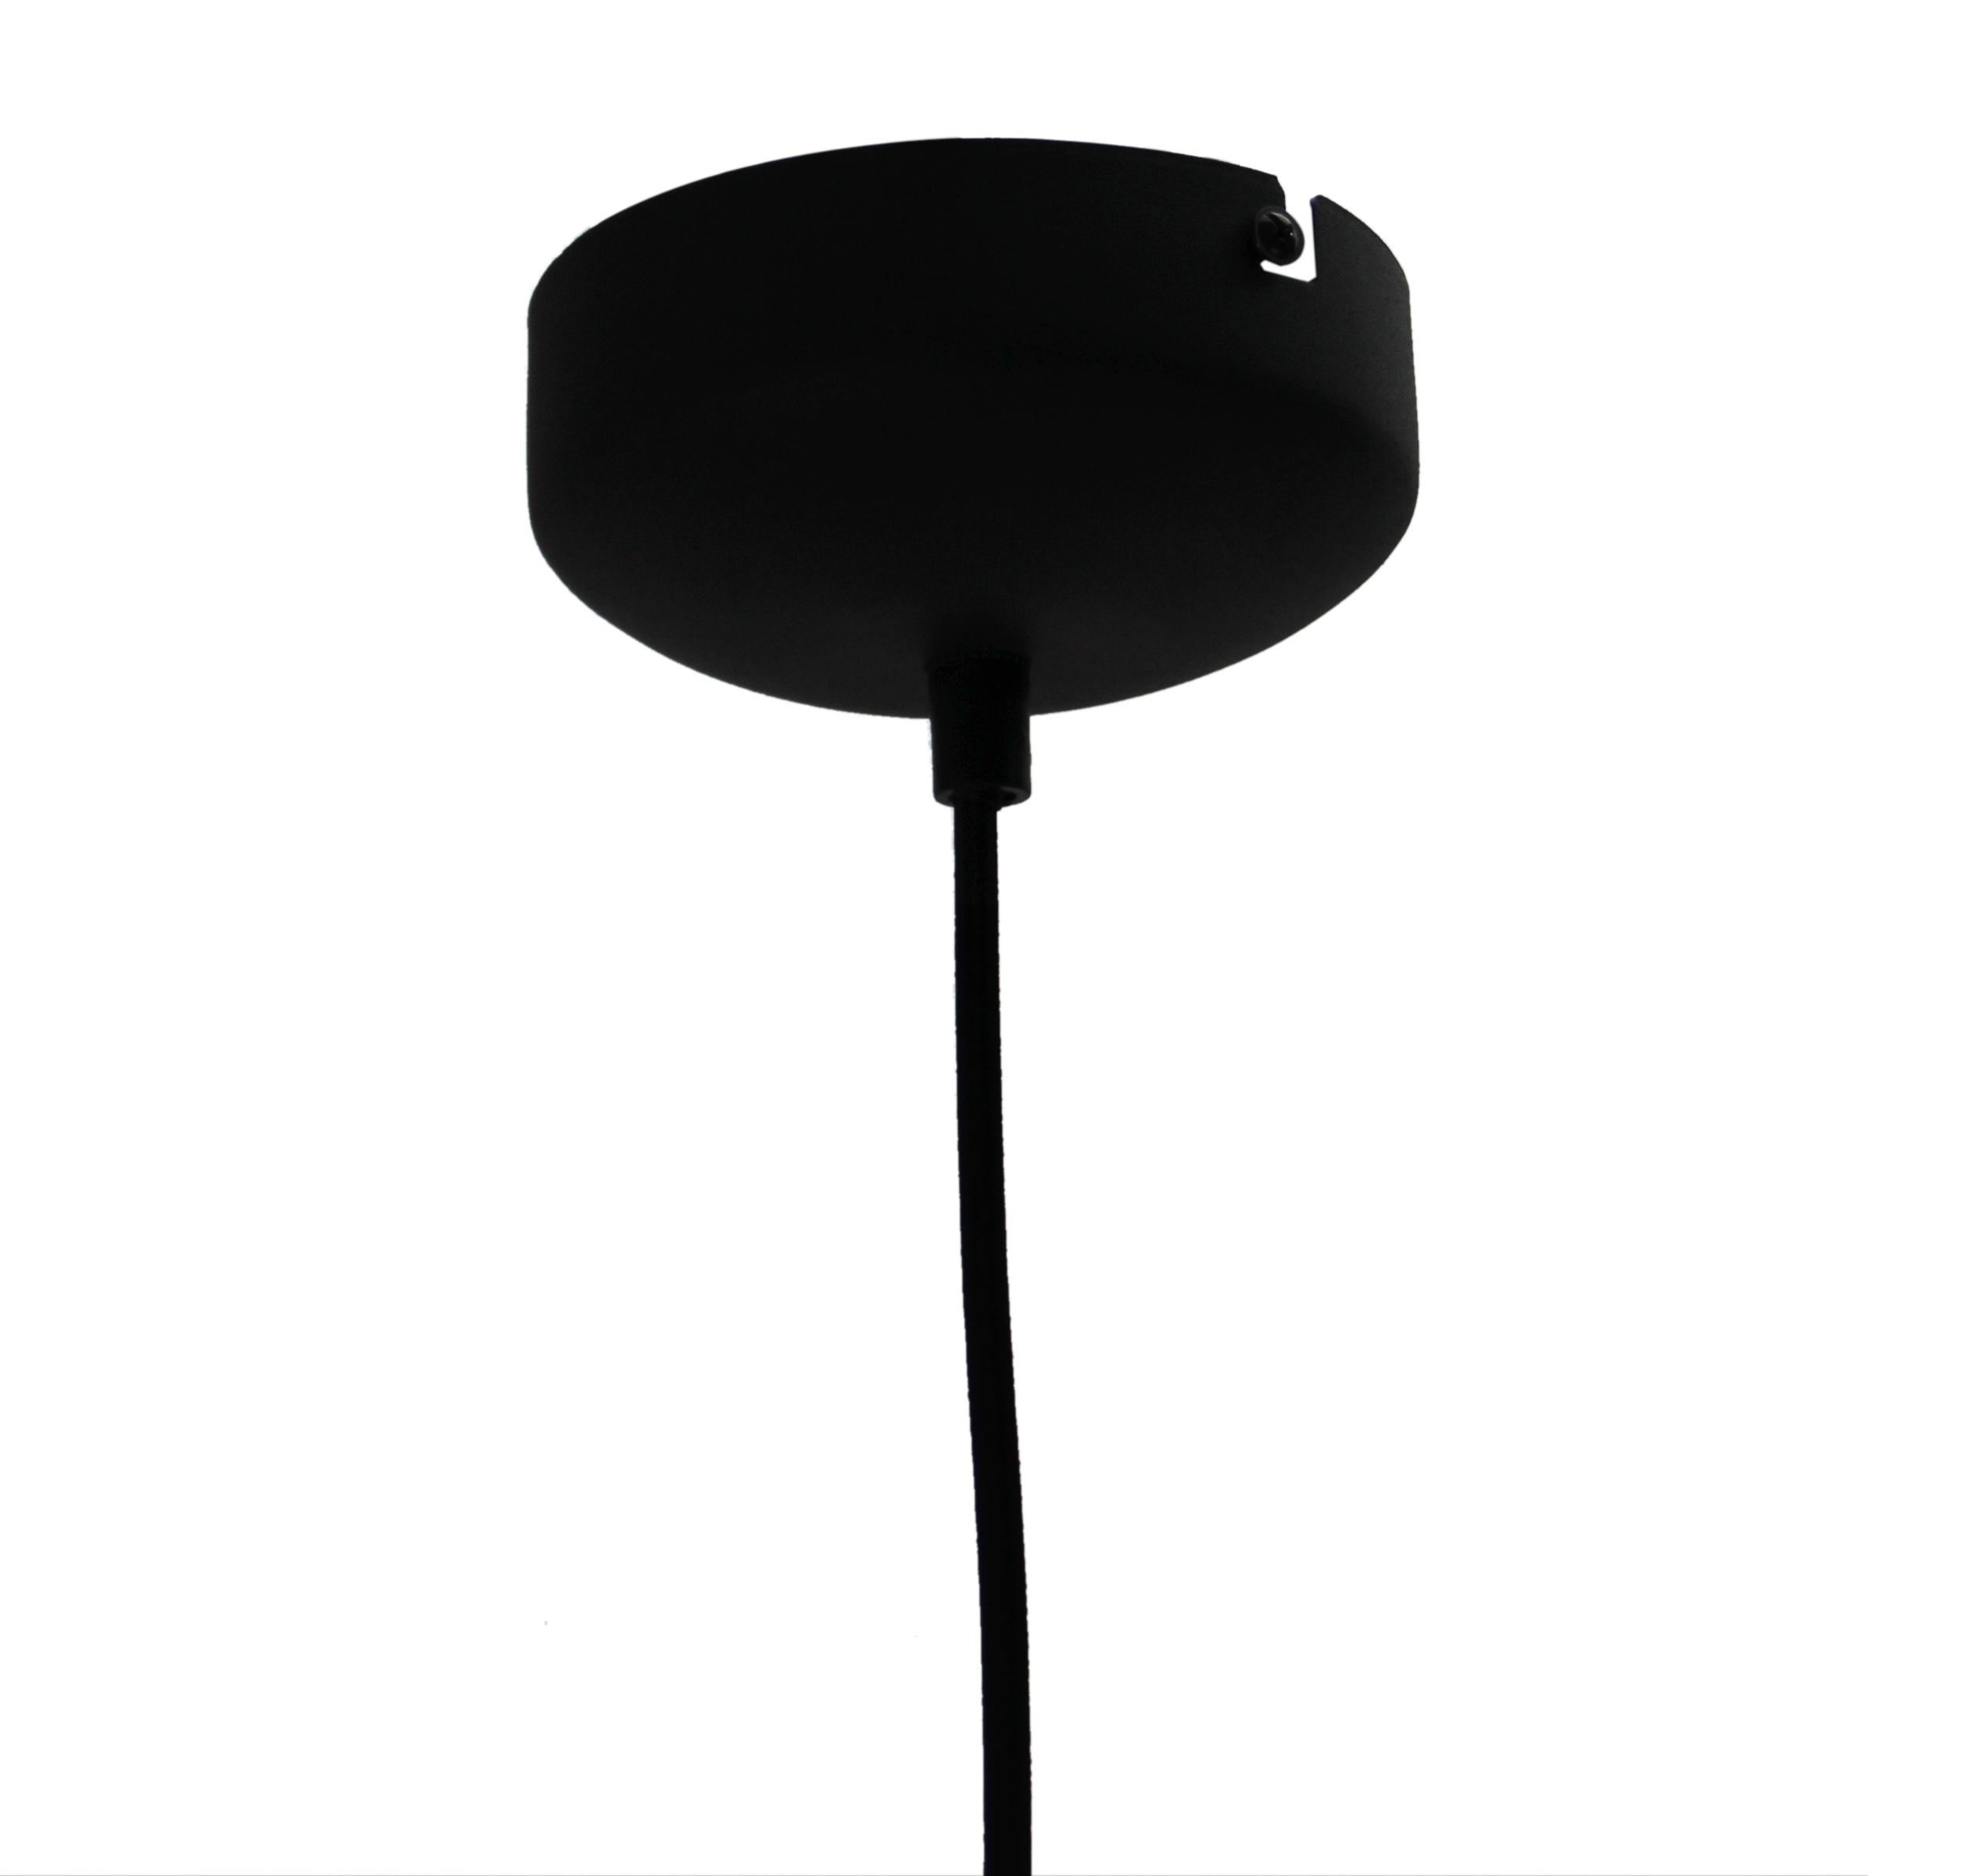 Nero hanglamp - 1 lichts - 20 cm - zwart met glas